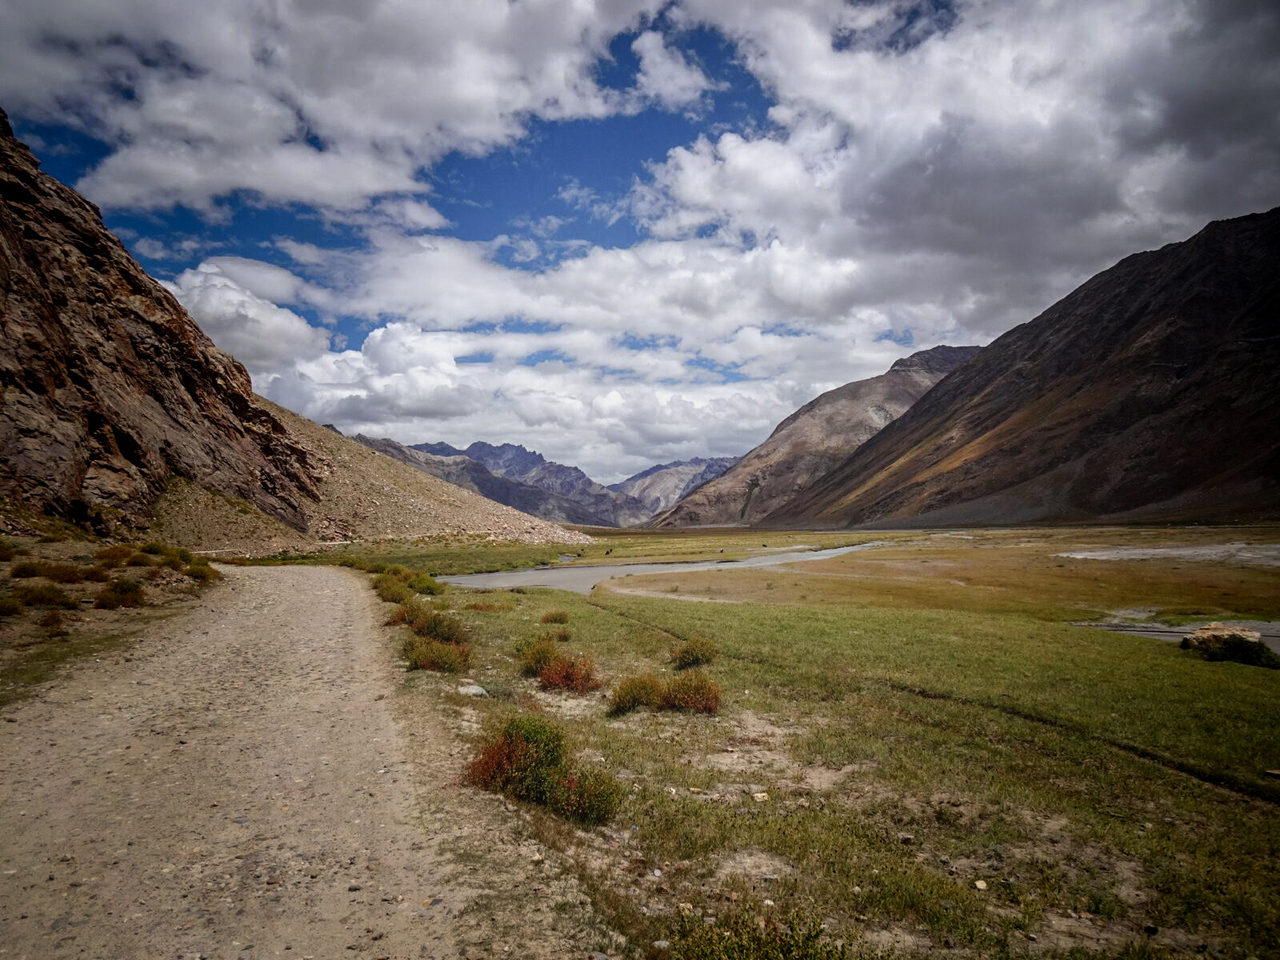 Road in the Zanskar Valley in India